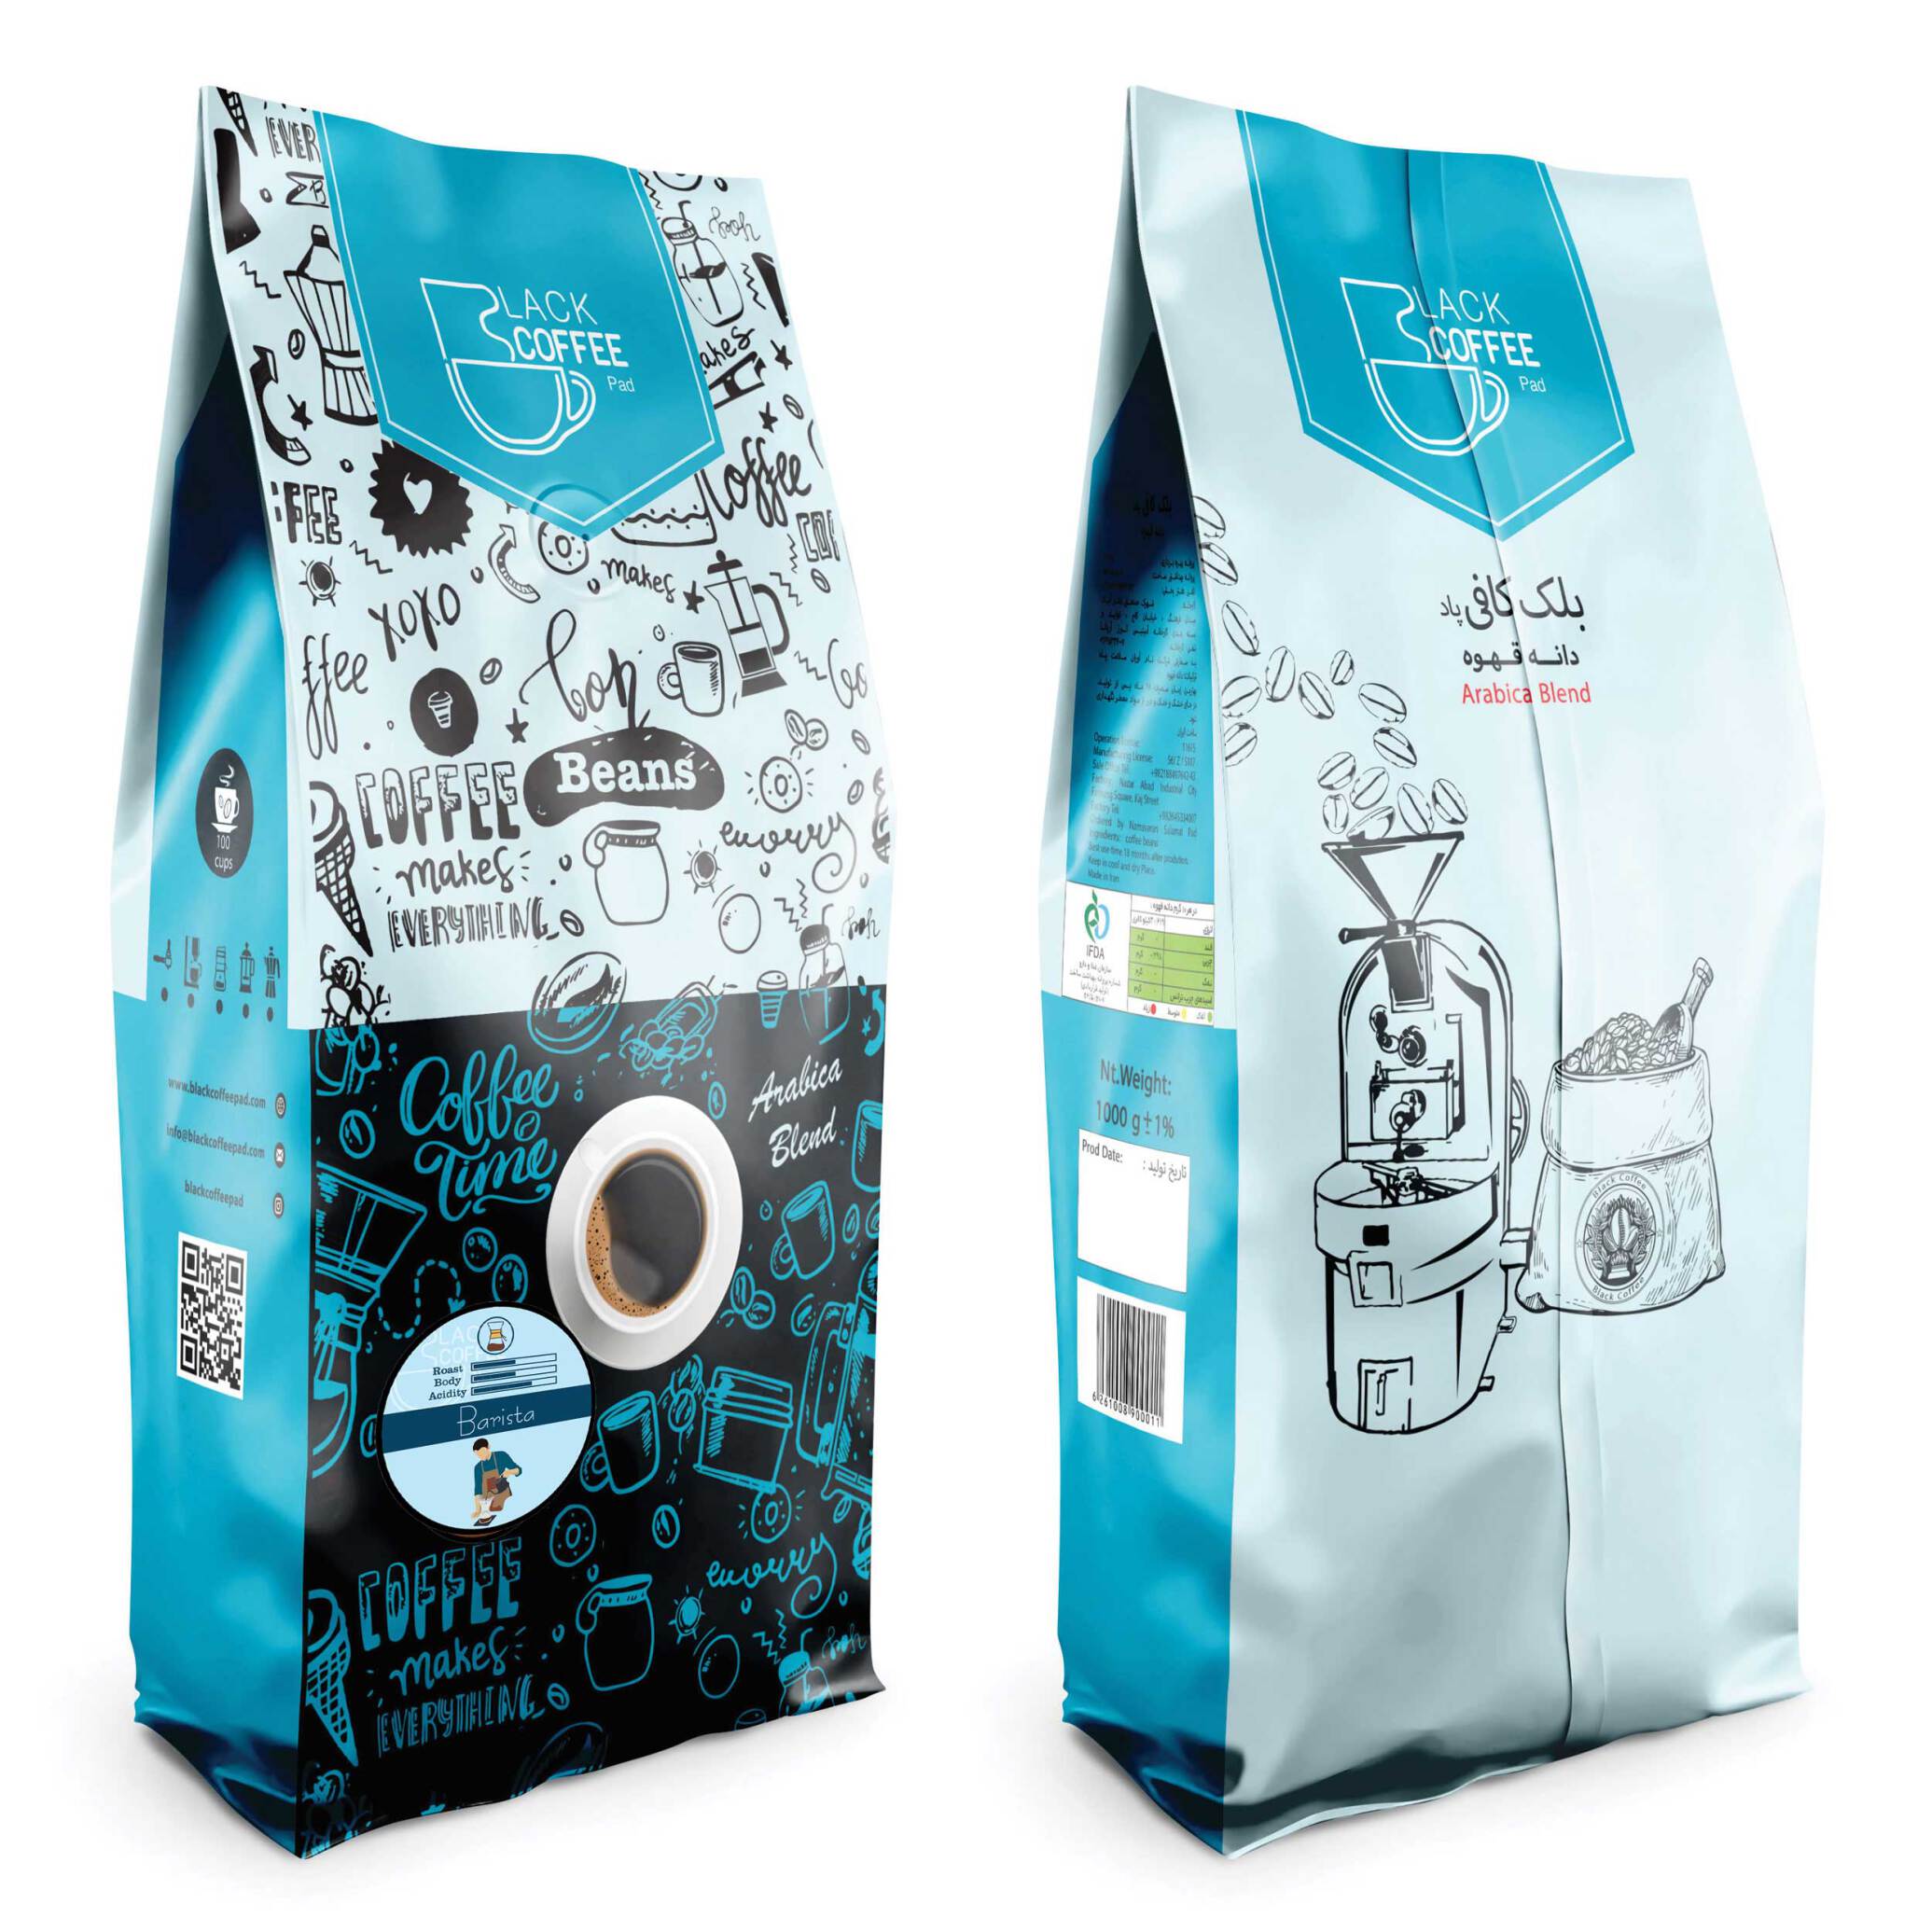  دانه قهوه باریستا - ۱کیلو گرم Barista Coffee Beans | بلک کافی | فروشگاه قهوه و محصولات قهوه| دانه قهوه | بسته بندی قهوه 